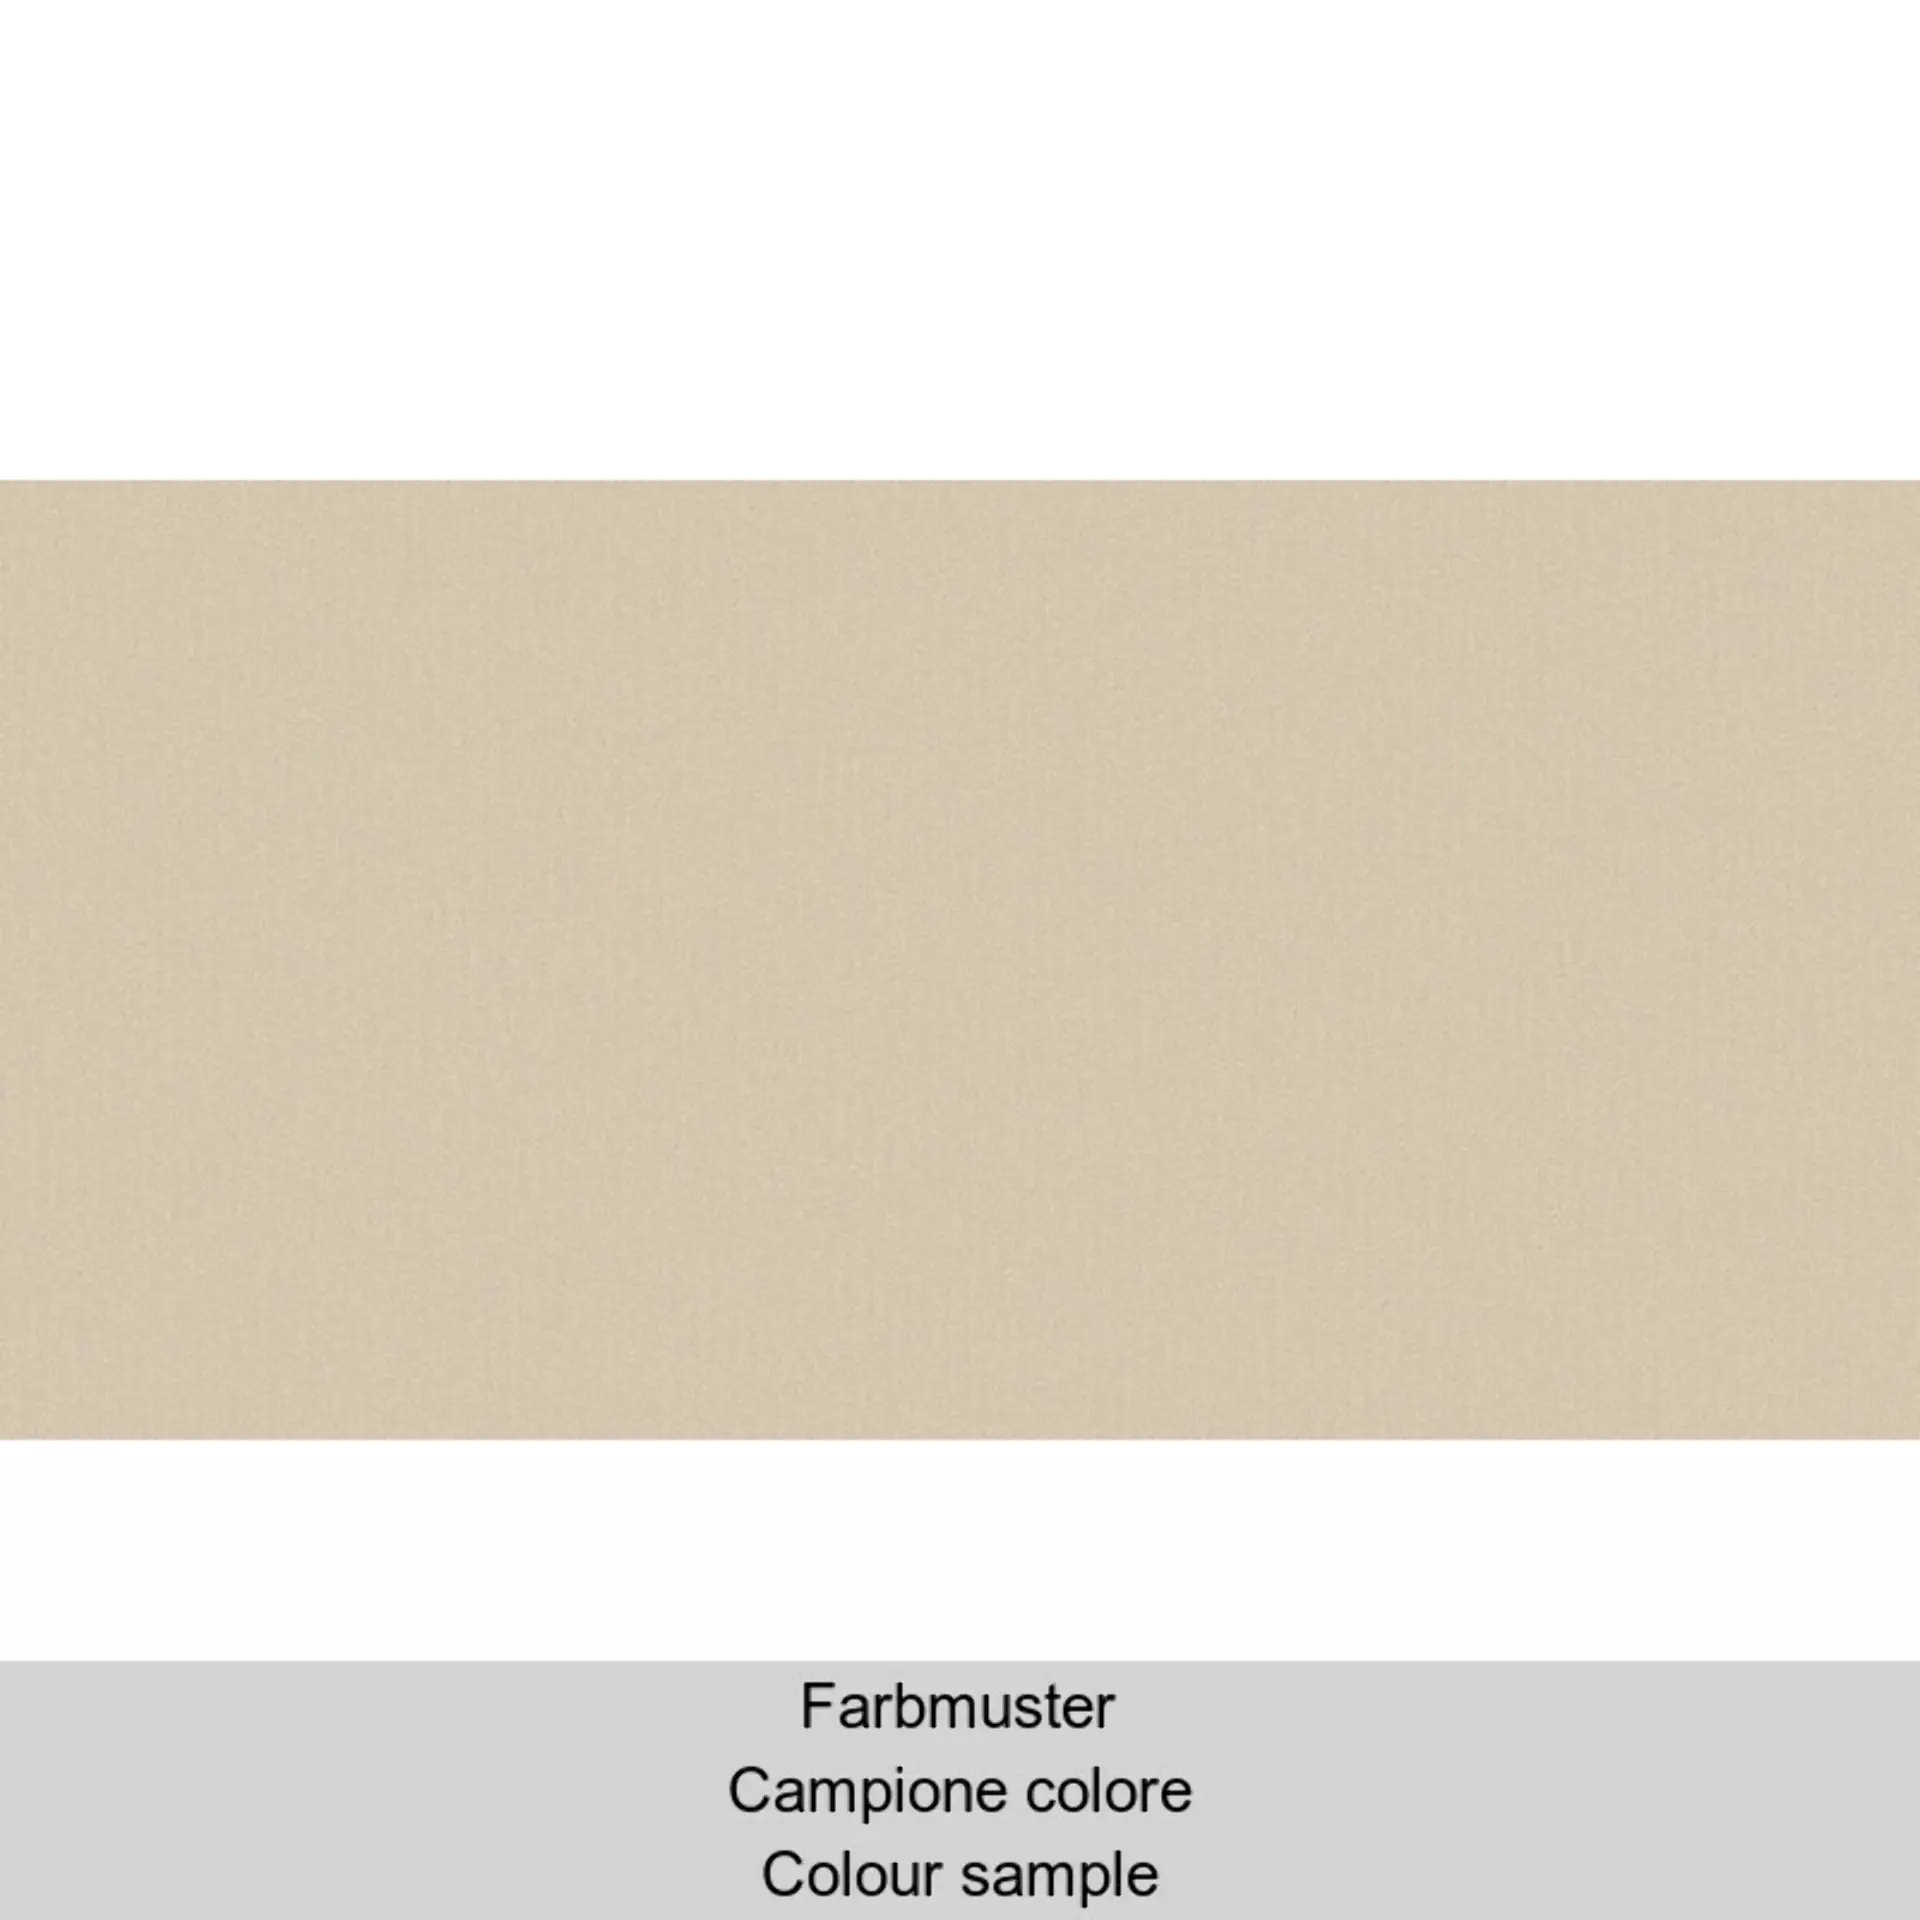 Casalgrande Architecture Dark Ivory Naturale – Matt 4790156 30x60cm rectified 9,4mm